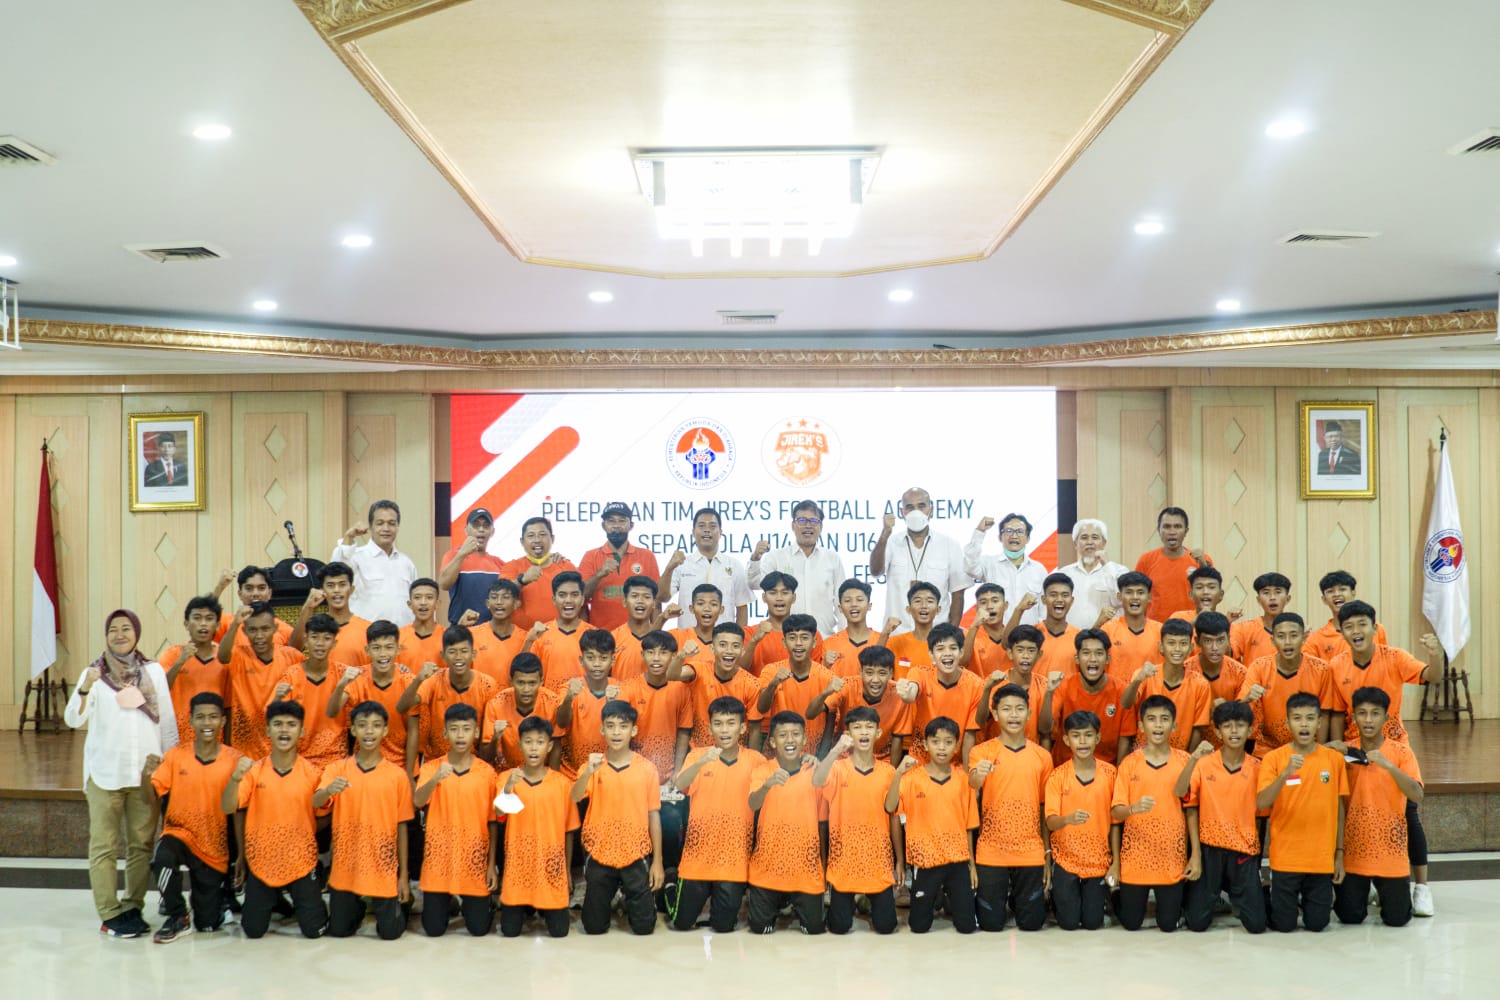 Kemenpora Lepas Tim JIREX'S Football Academy Sepak Bola U-14 dan U-16 Mengikuti JSE International Football Festival 2023 di Thailand